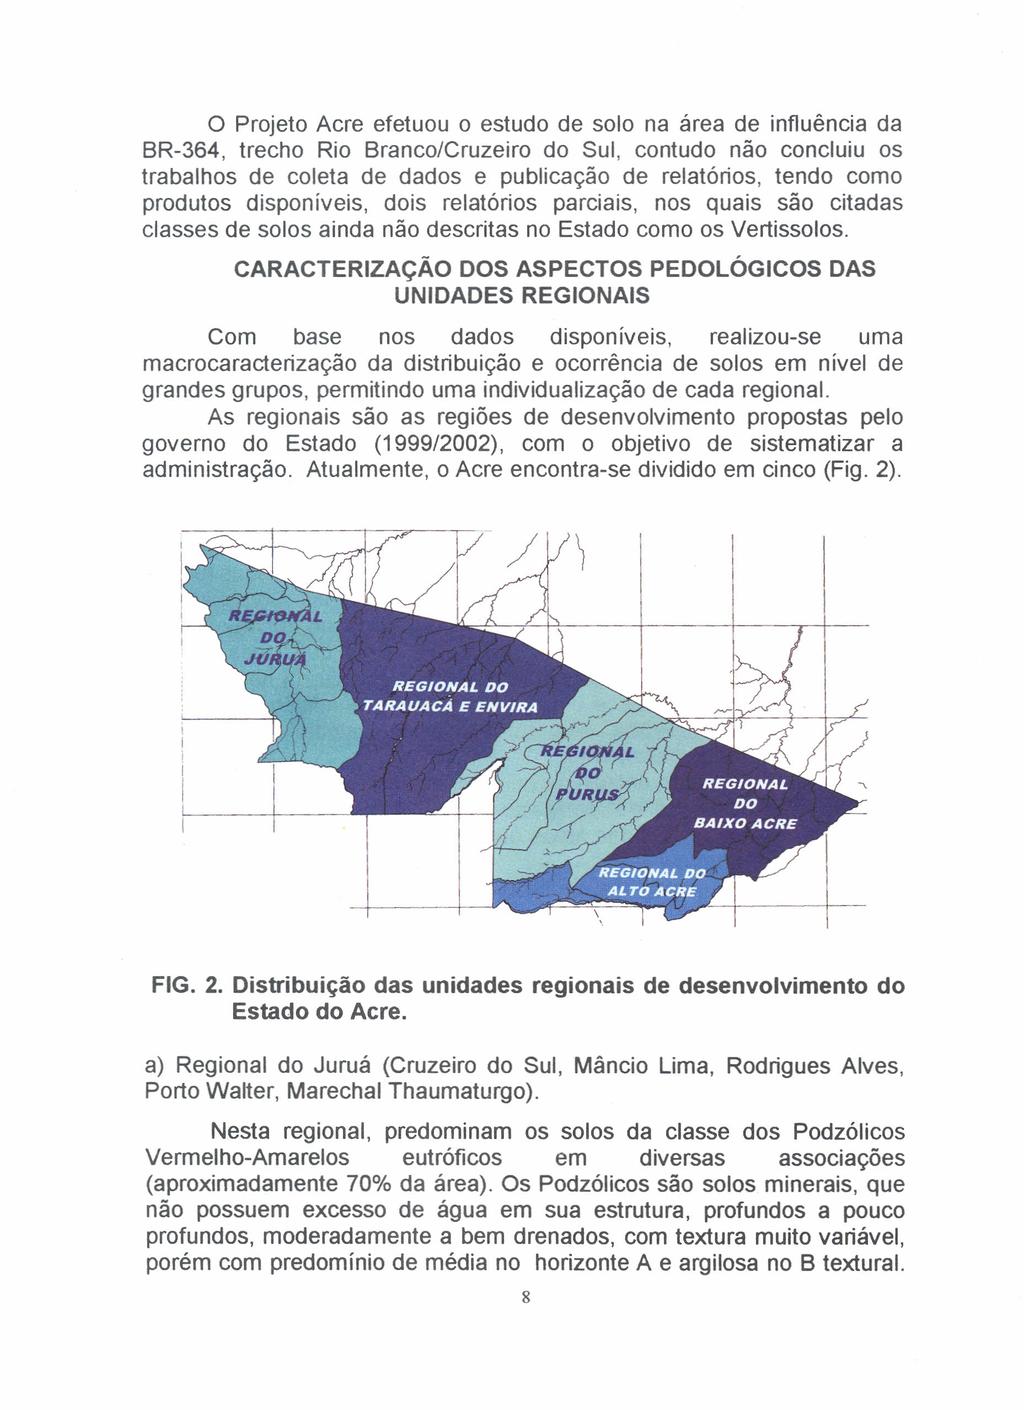 o Projeto Acre efetuou o estudo de solo na área de influência da BR-364, trecho Rio Branco/Cruzeiro do Sul, contudo não concluiu os trabalhos de coleta de dados e publicação de relatórios, tendo como